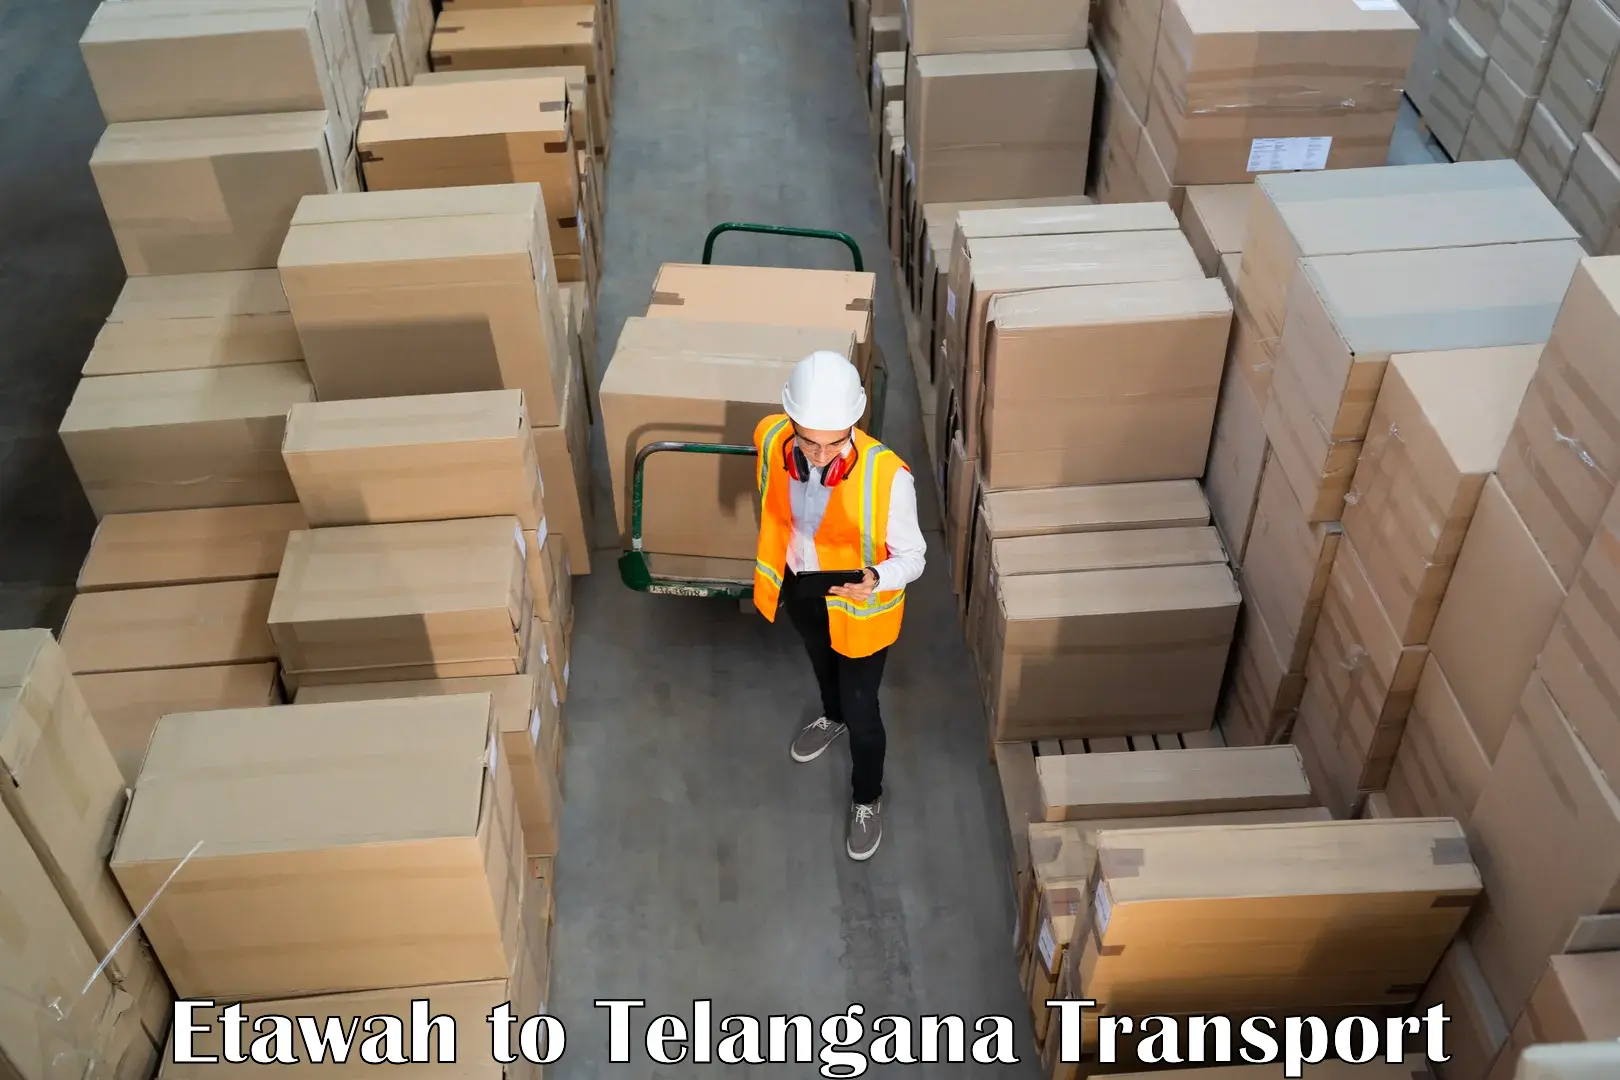 Delivery service Etawah to Tallada